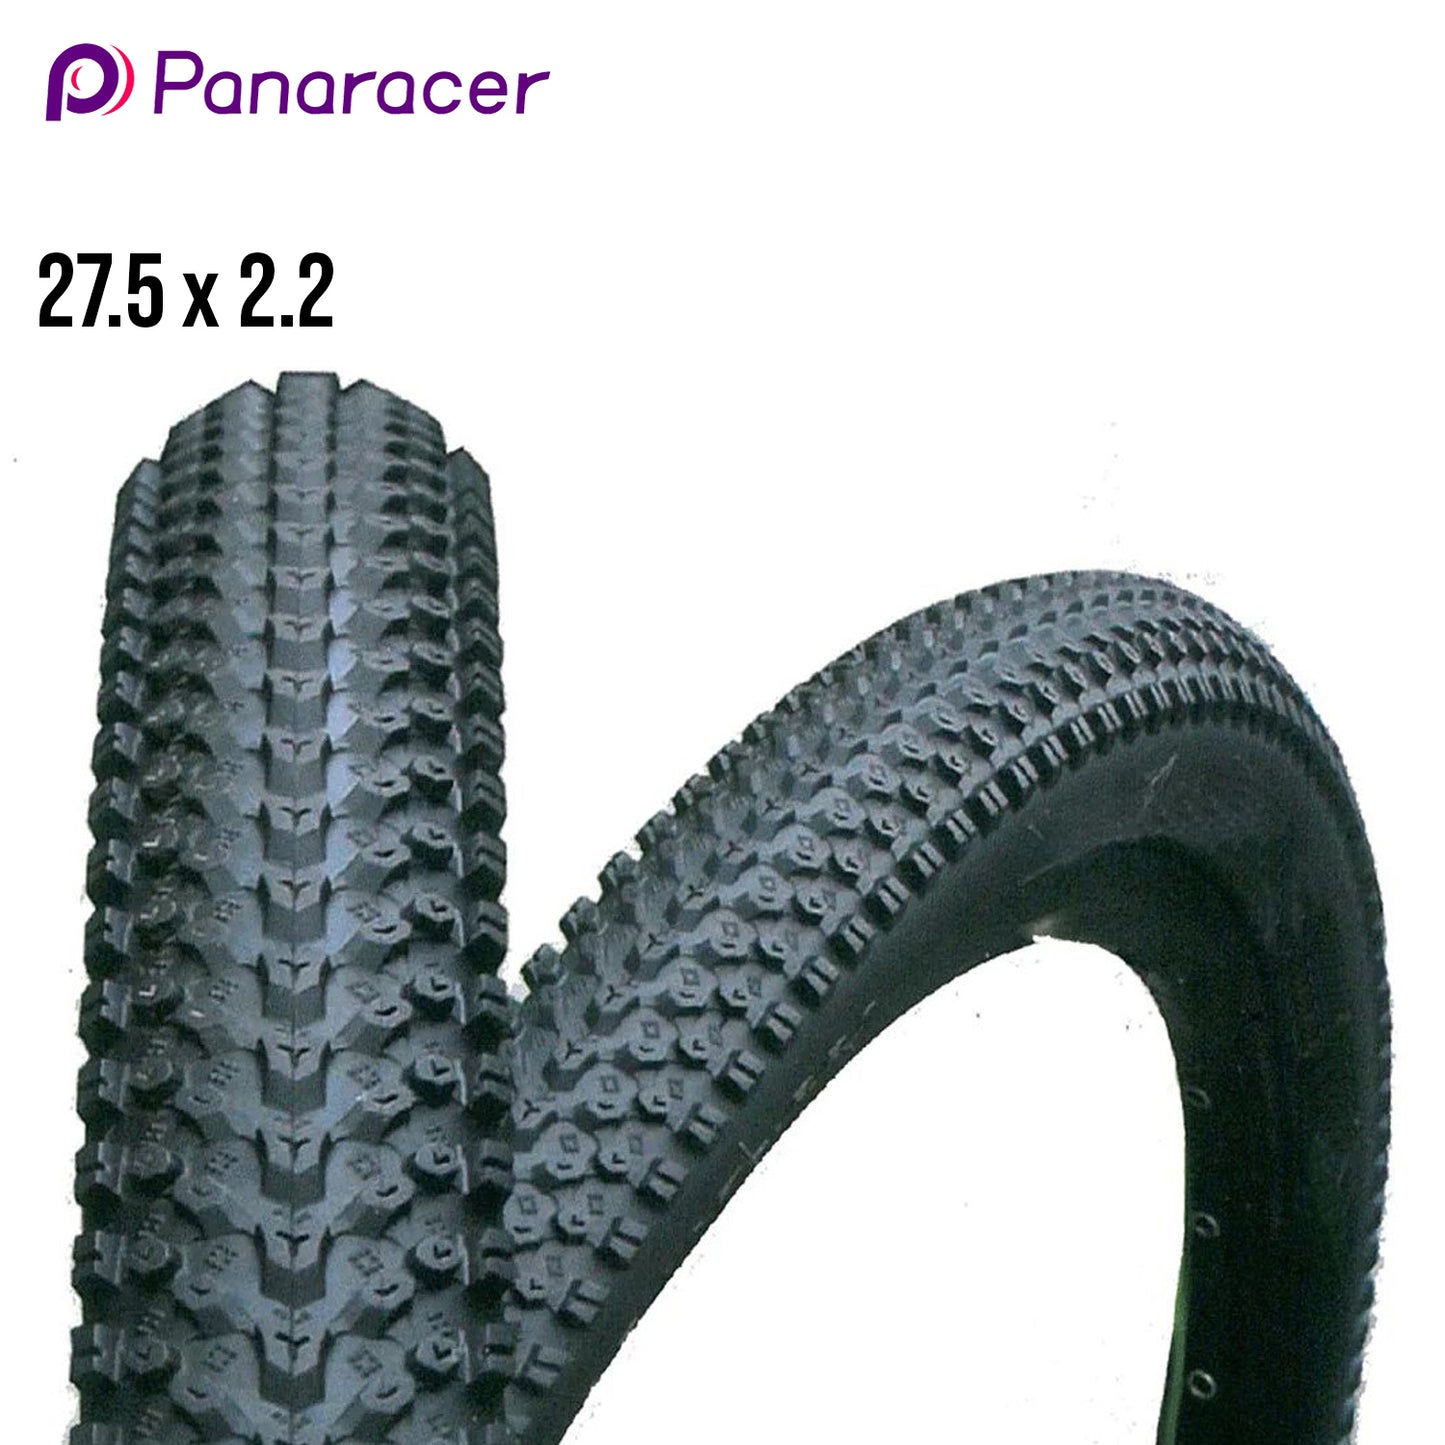 Panaracer Comet HardPack Folding MTB Tire 27.5 - Black